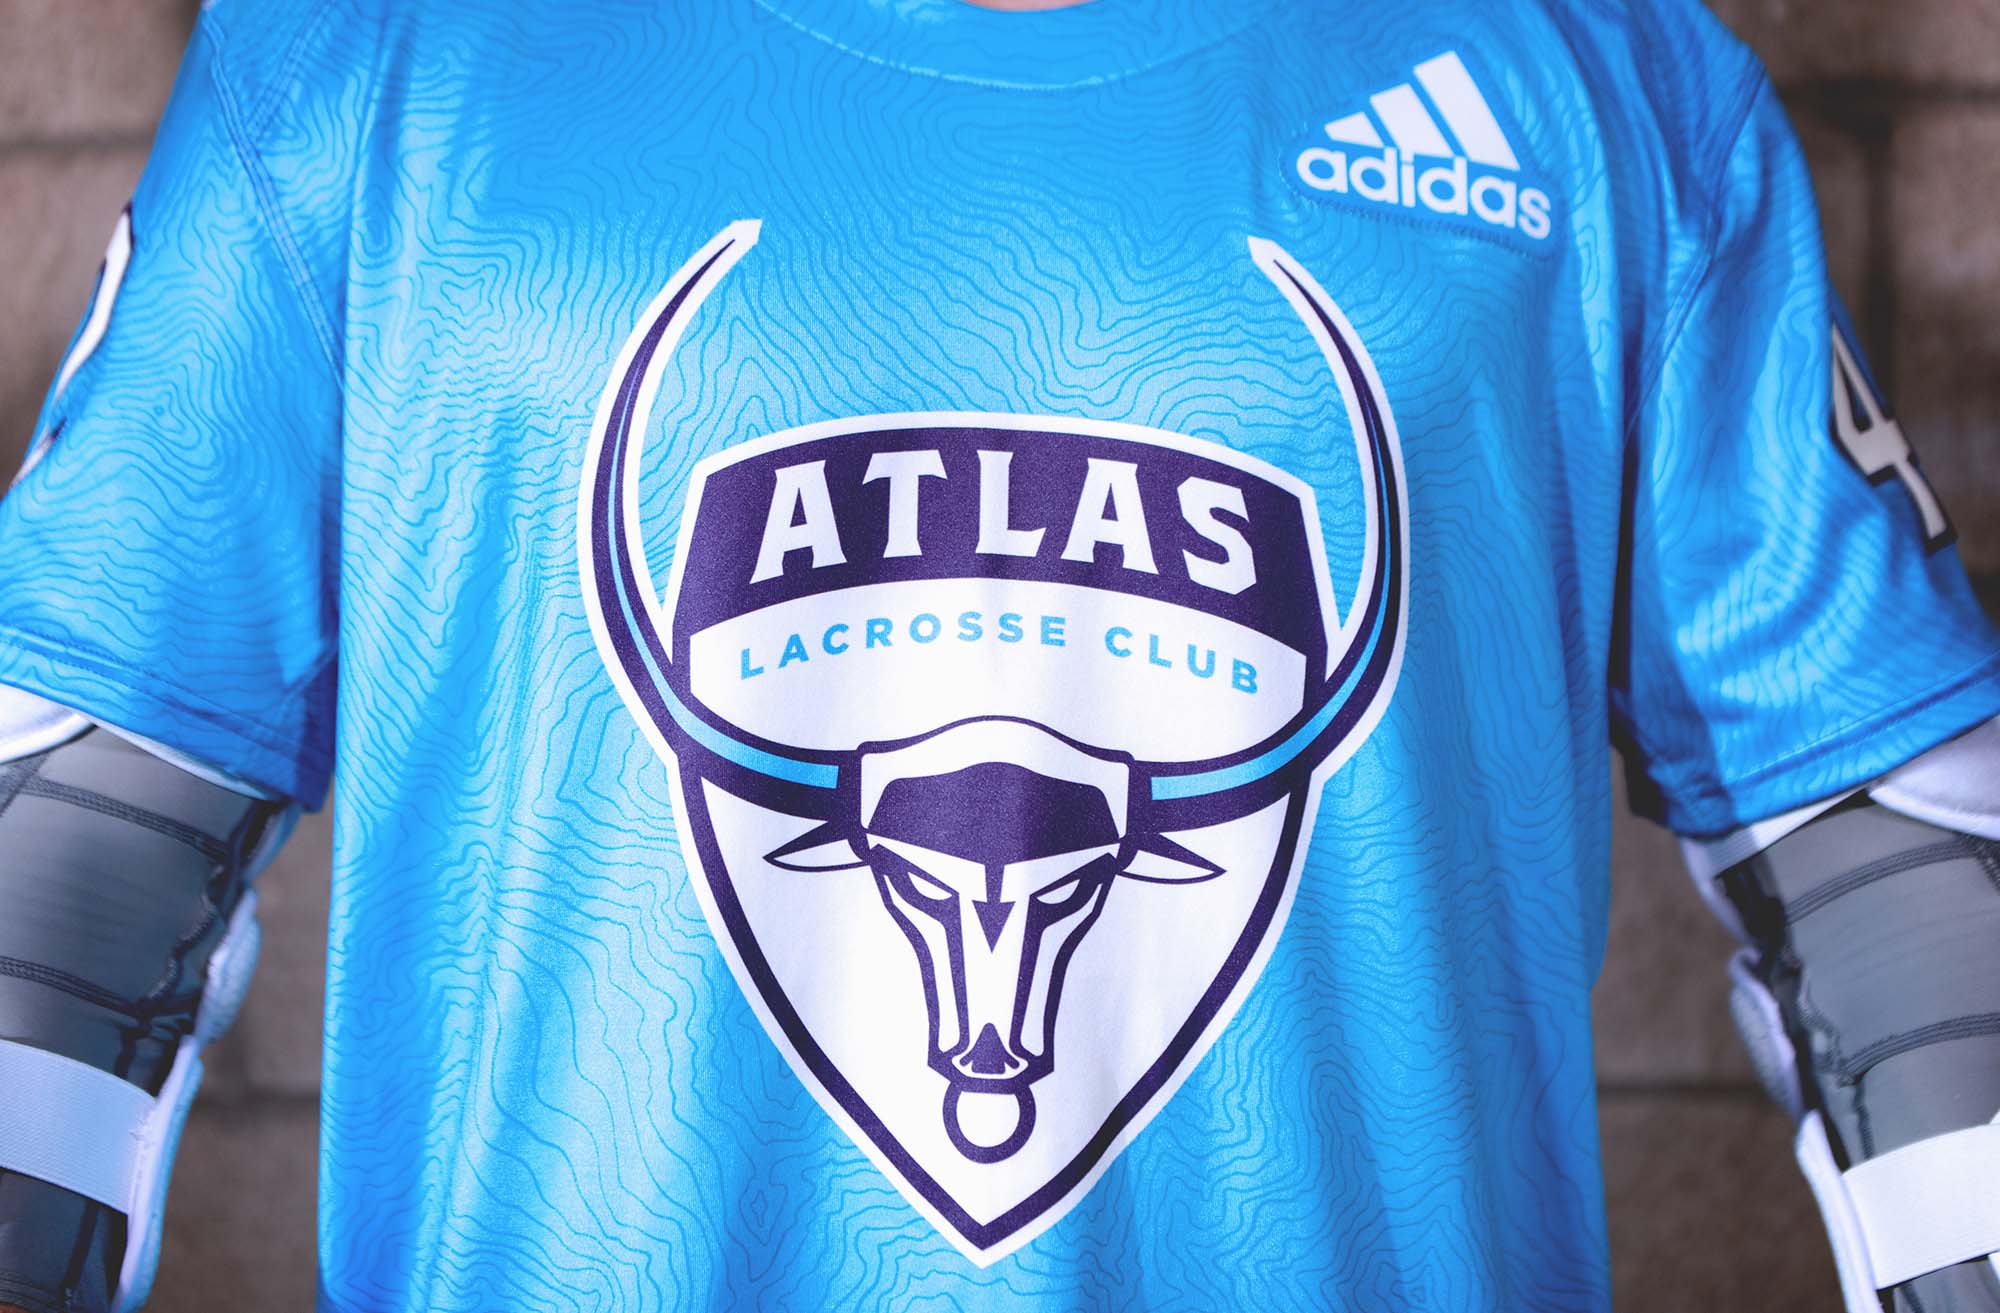 adidasLacrosse_PLL_ATLAS_Crest_Home_01.jpg